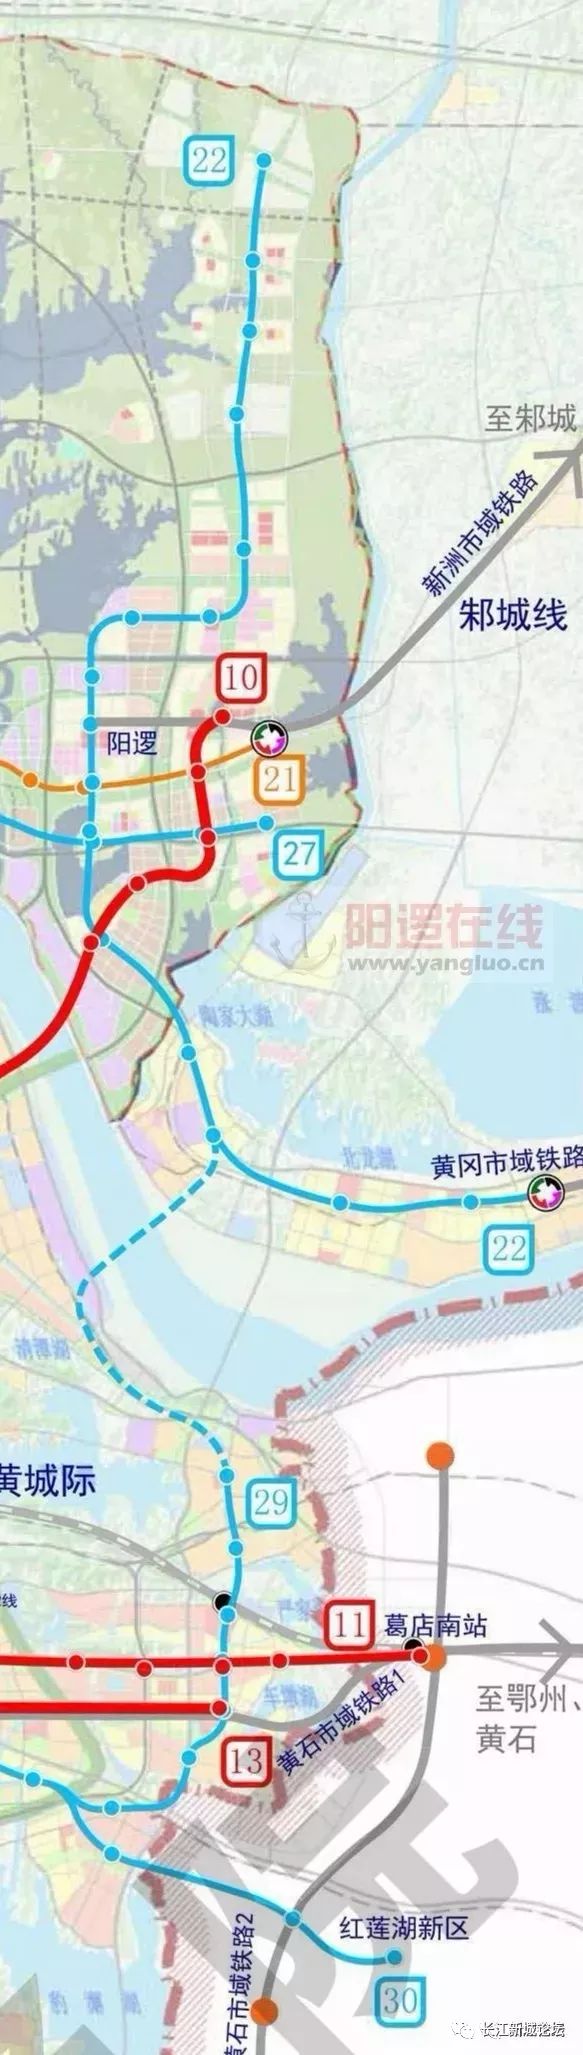 地铁22号线贯穿长江新城东部 途经仓埠,阳逻,双柳,左岭  来源:武汉